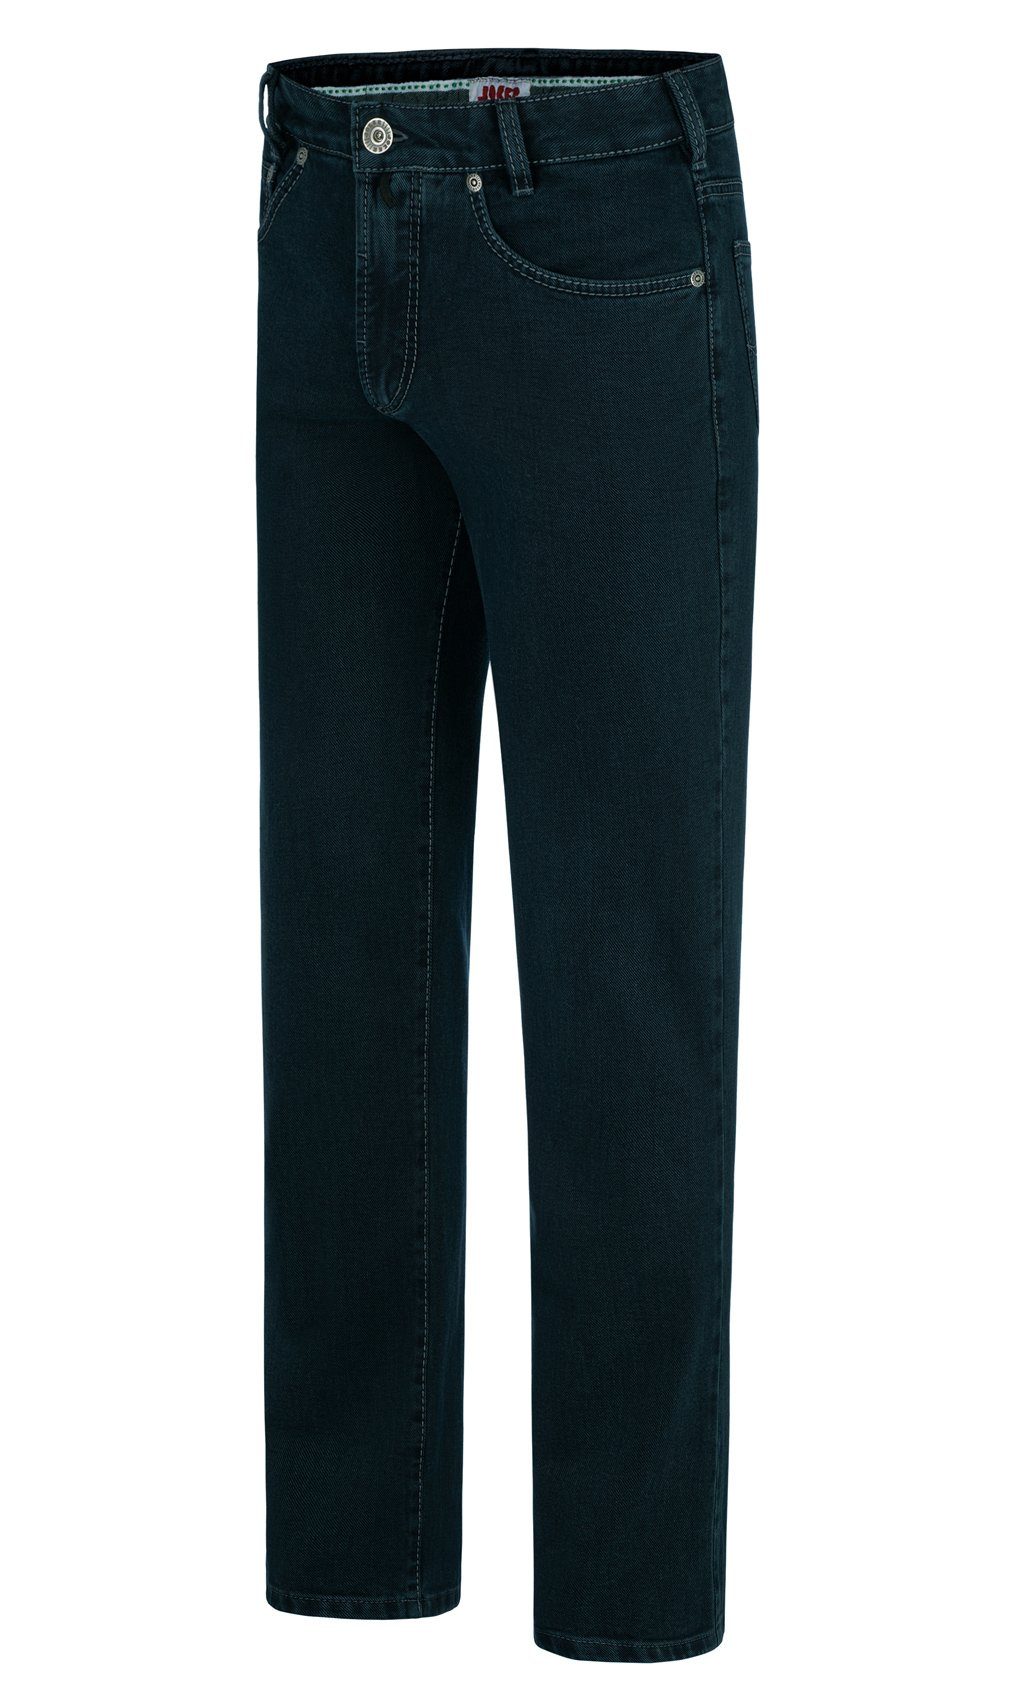 Joker 5-Pocket-Jeans Clark 1282200 black blue Japan stabiler Denim